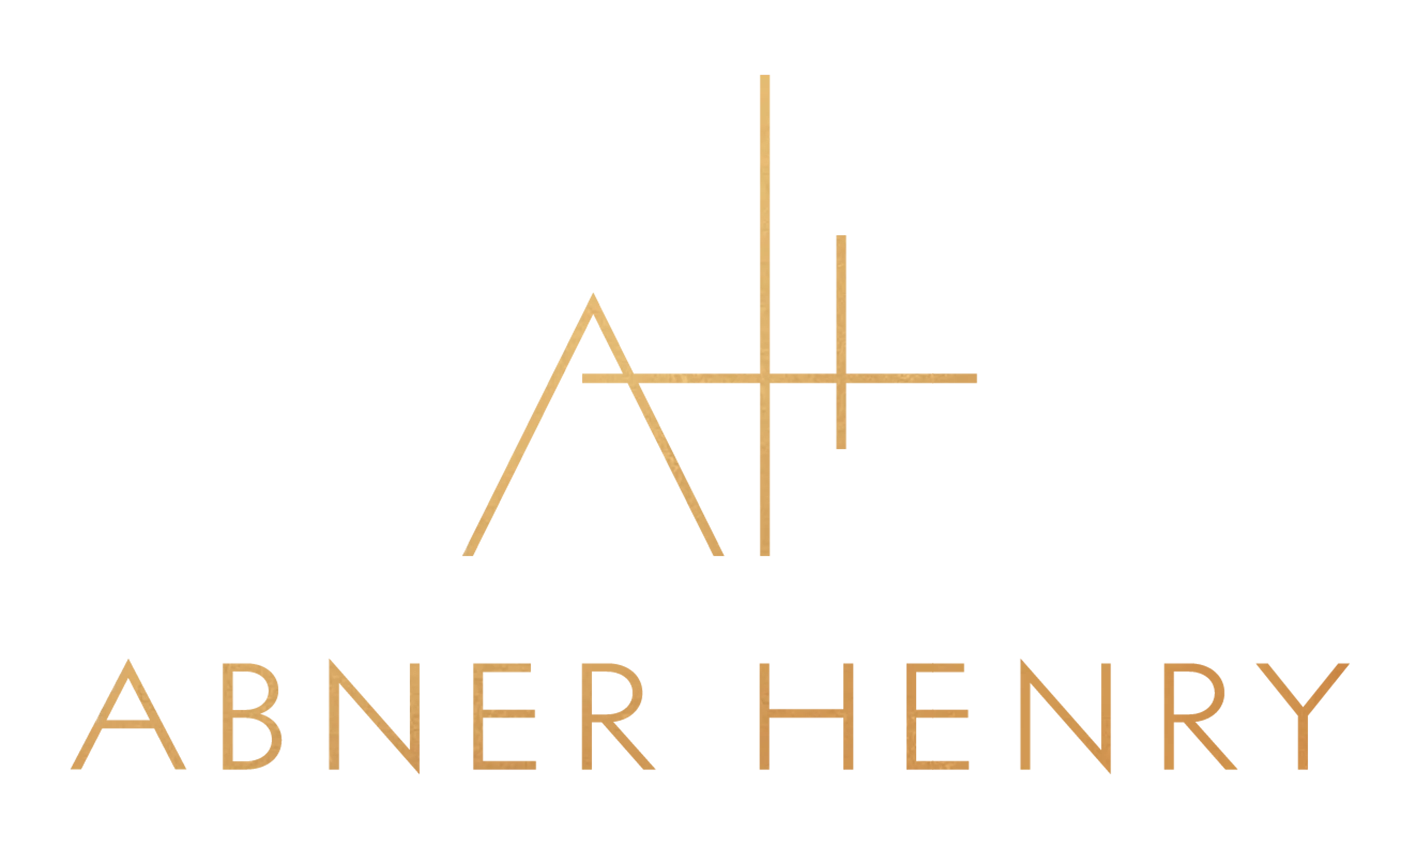 Abner Henry